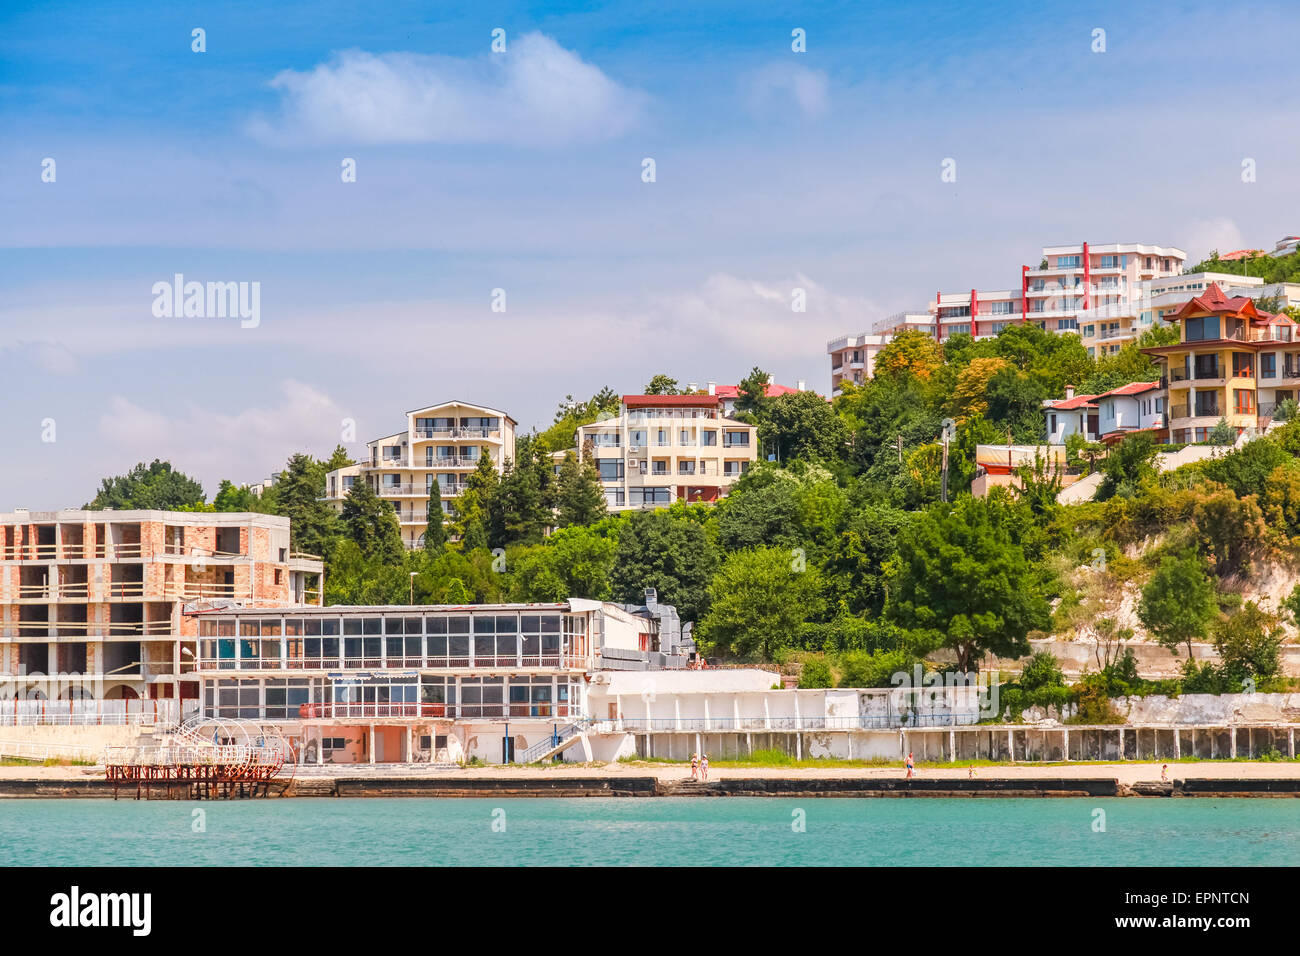 Stadtbild von Kavarna, Küstenstadt und Badeort in der Region Dobrudscha Nordosten Bulgariens Schwarzmeerküste Stockfoto